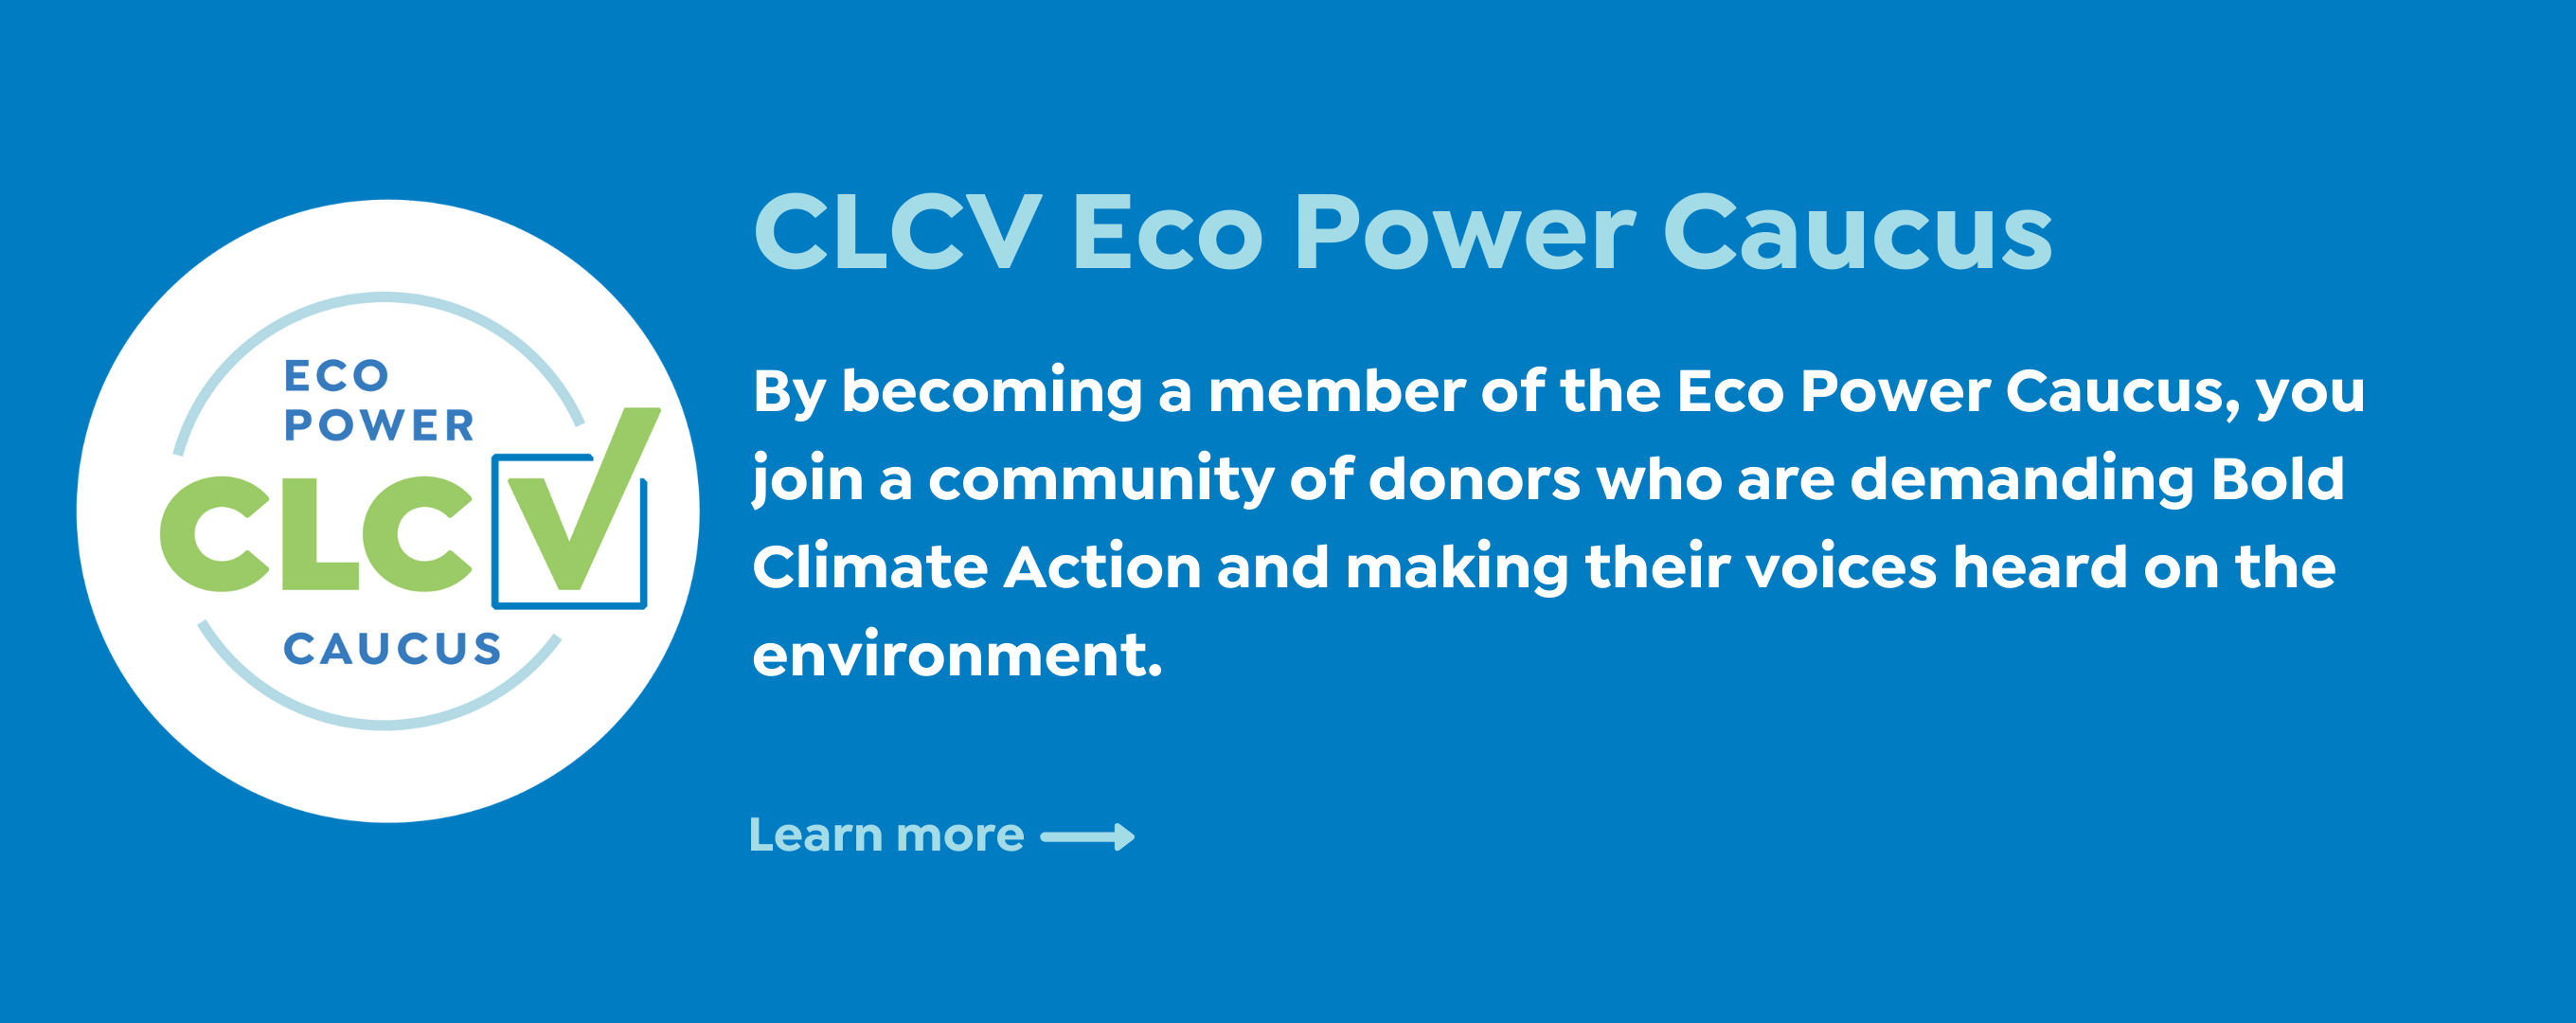 Eco Power Caucus